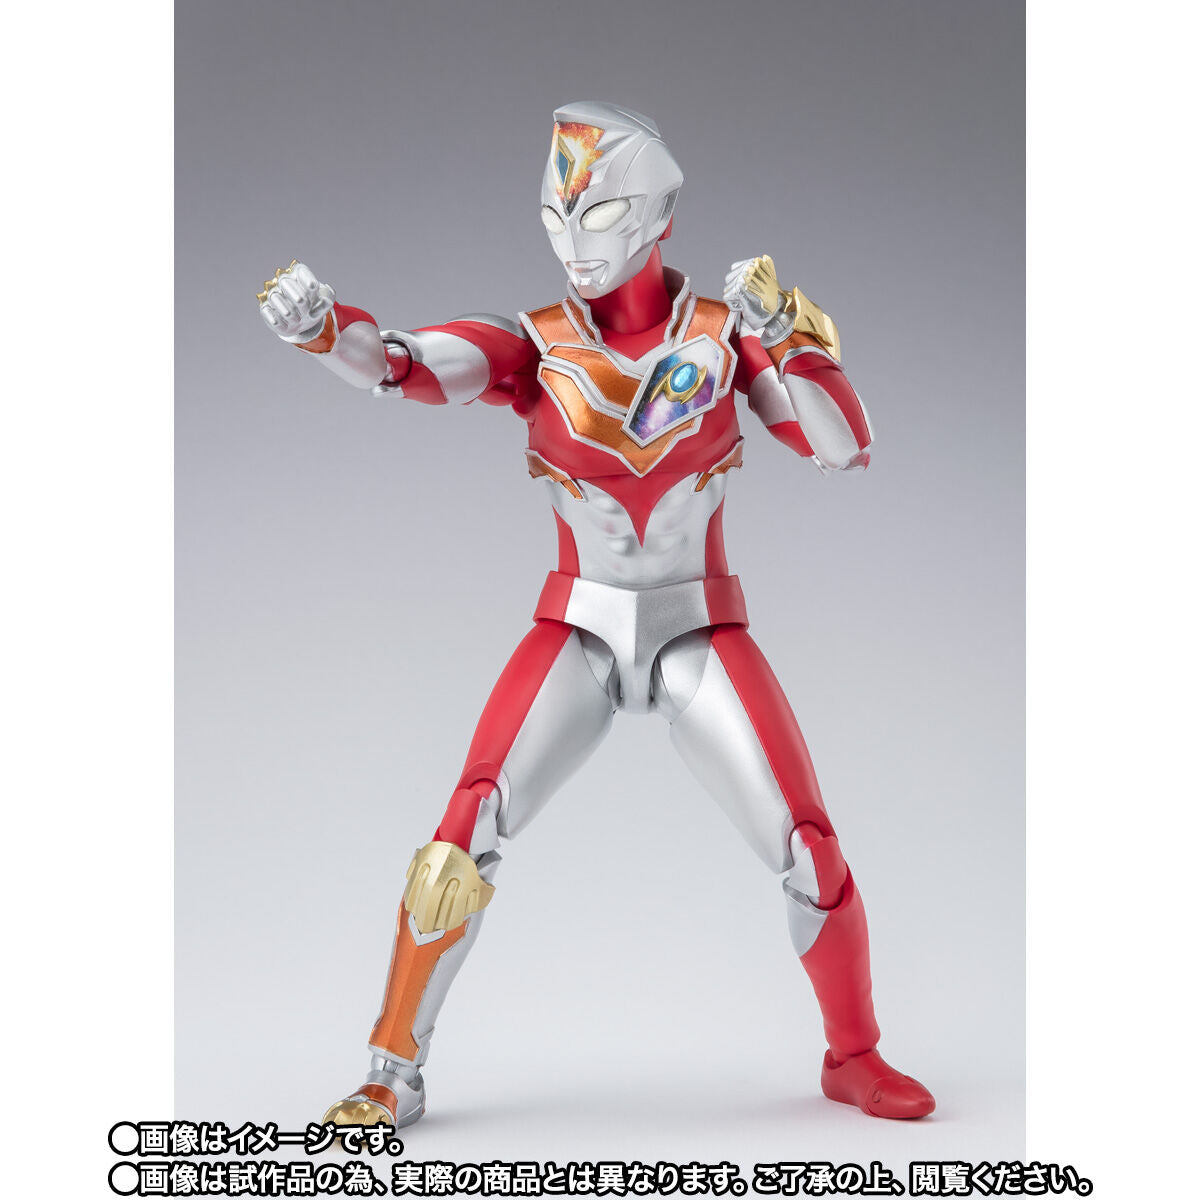 SH Figuarts Ultraman Decker Strong Type